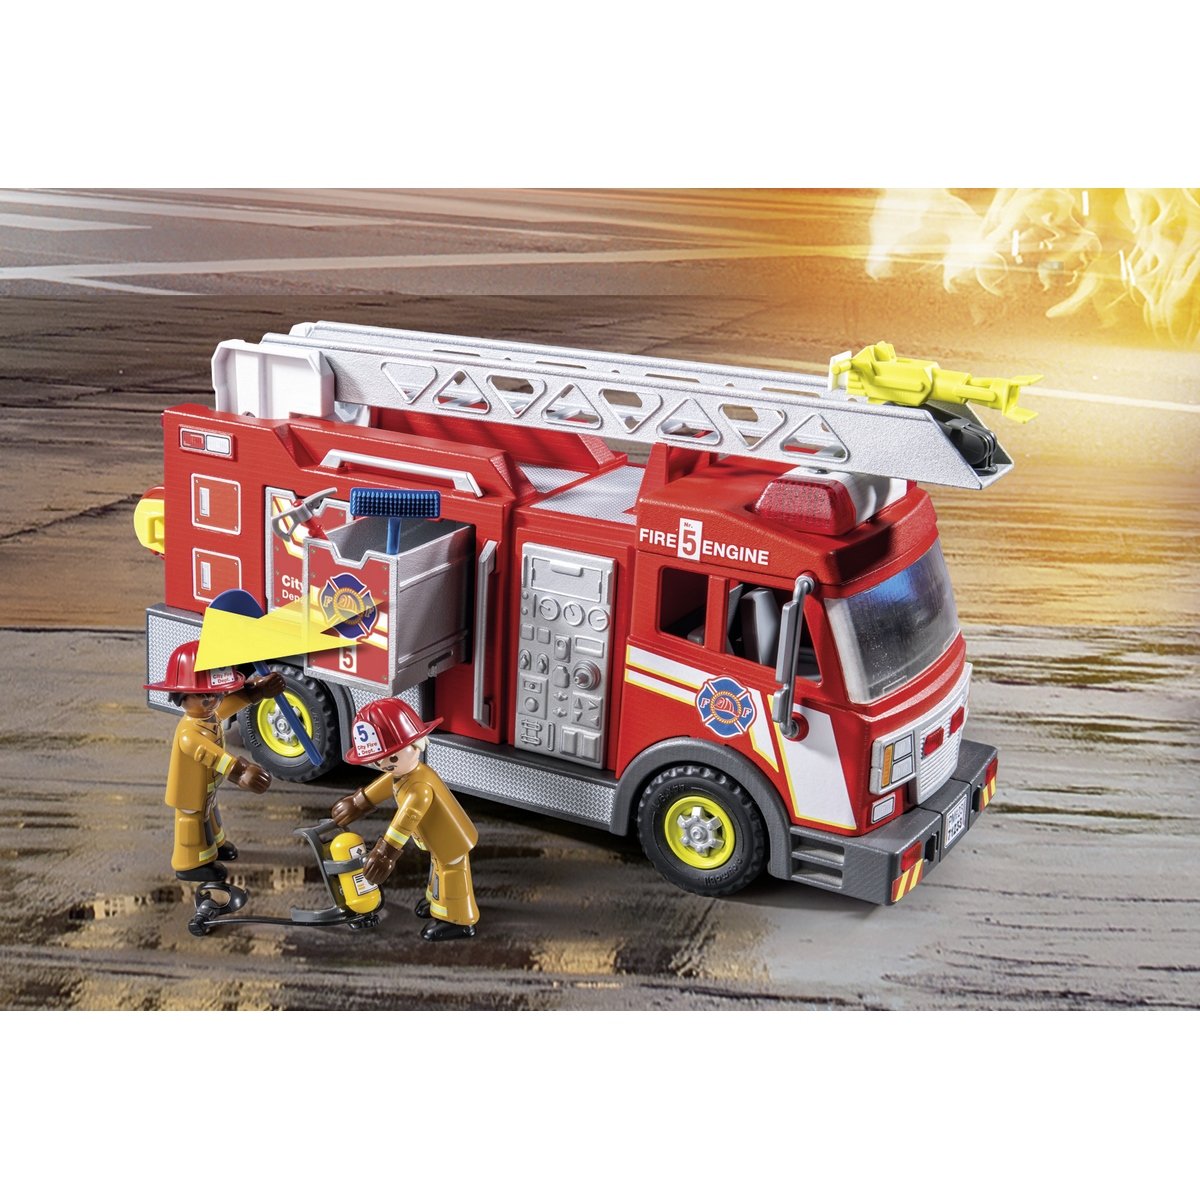 Grand camion de pompier a echelle mobile, jouet en bois Goki